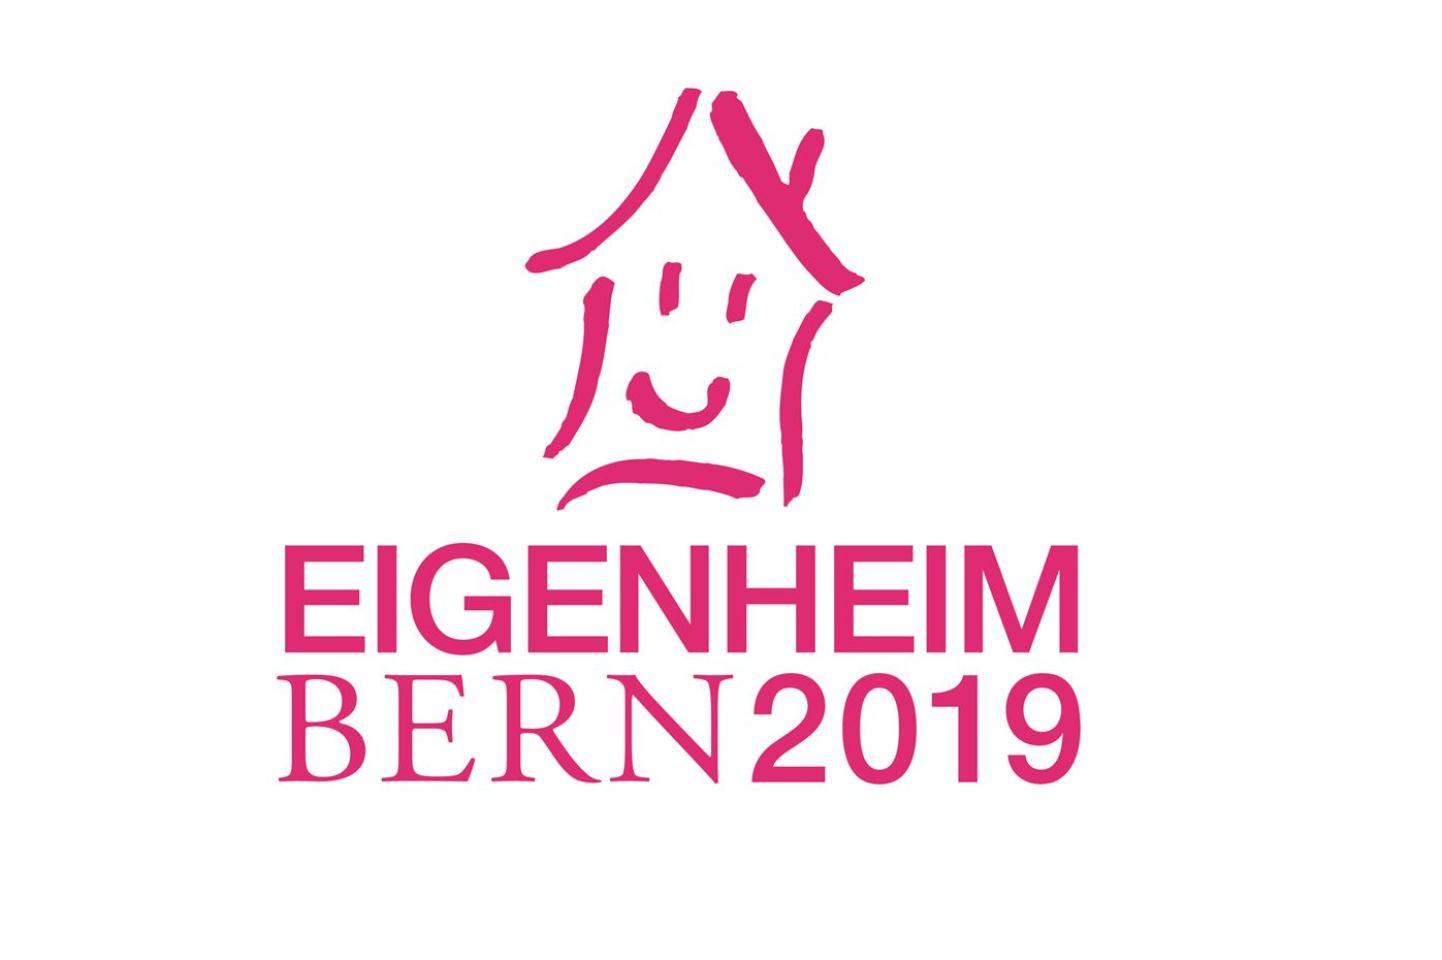 Eigenheim Bern 2019